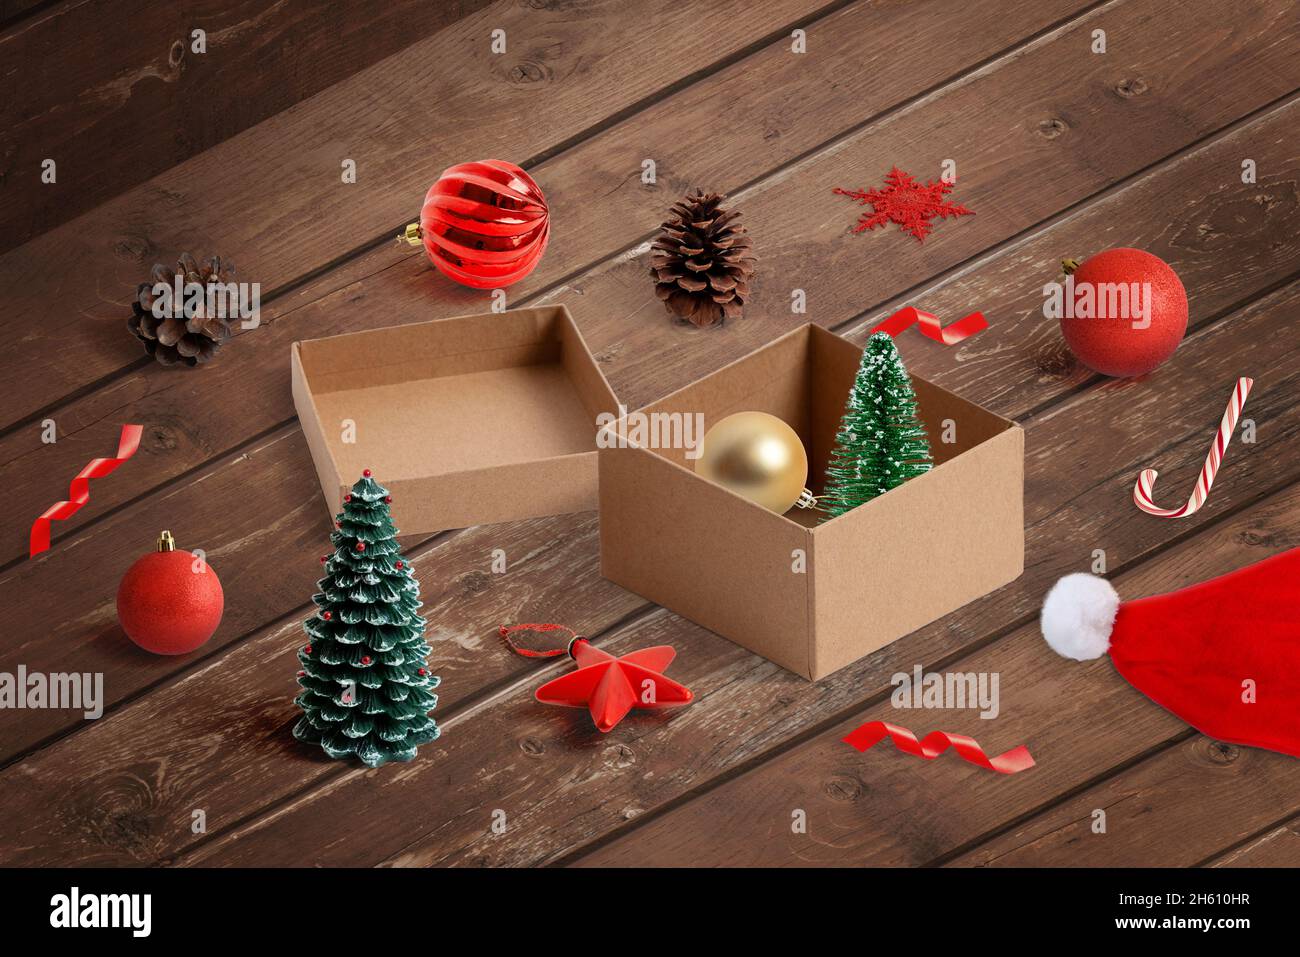 Togliendo le decorazioni di Natale dalla scatola. Preparazioni per decorare l'albero di Natale e concetto di spazio domestico. Vista isometrica Foto Stock